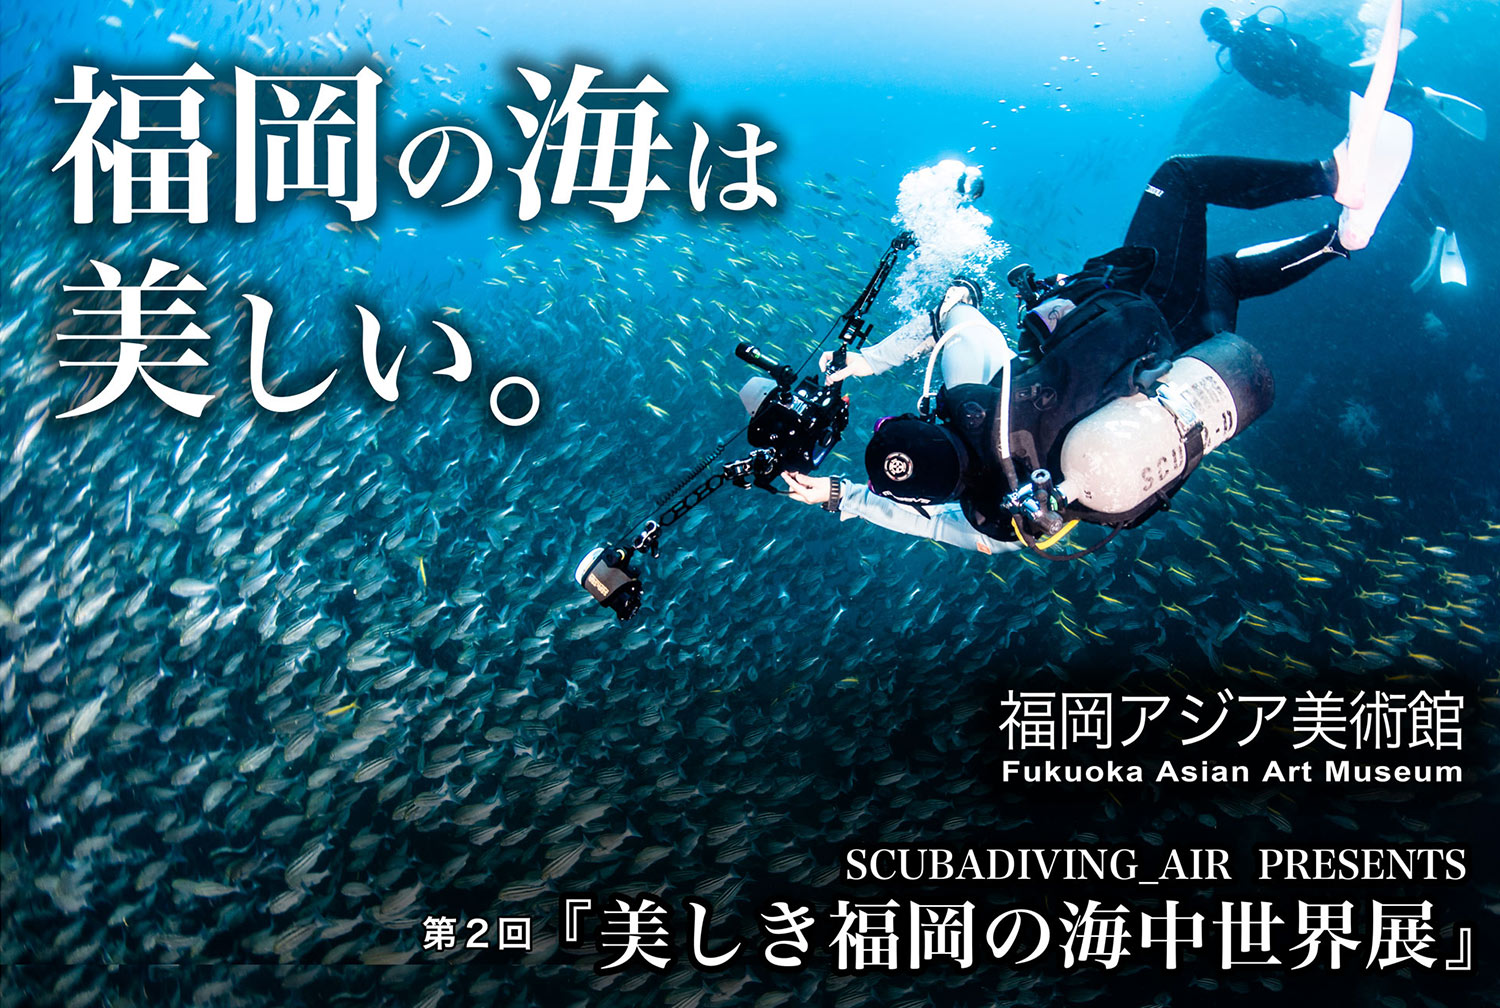 第2回「美しき福岡の海中世界展」 福岡アジア美術館で開催！